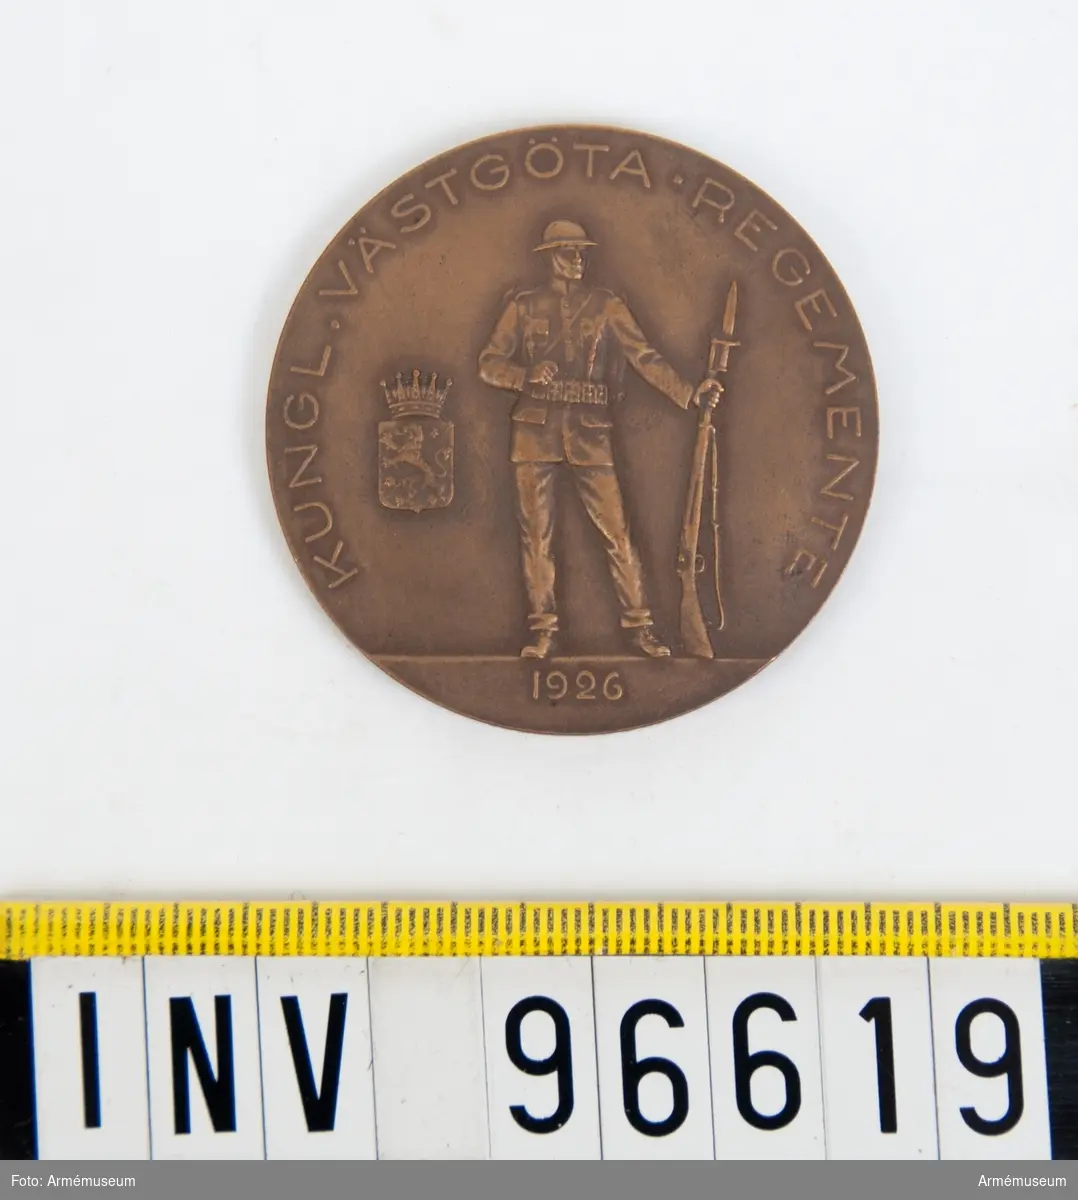 Medalj i brons för Västgöta regemente.
Stansar 3602-03.
Stansarna härdade 1926-08-13.